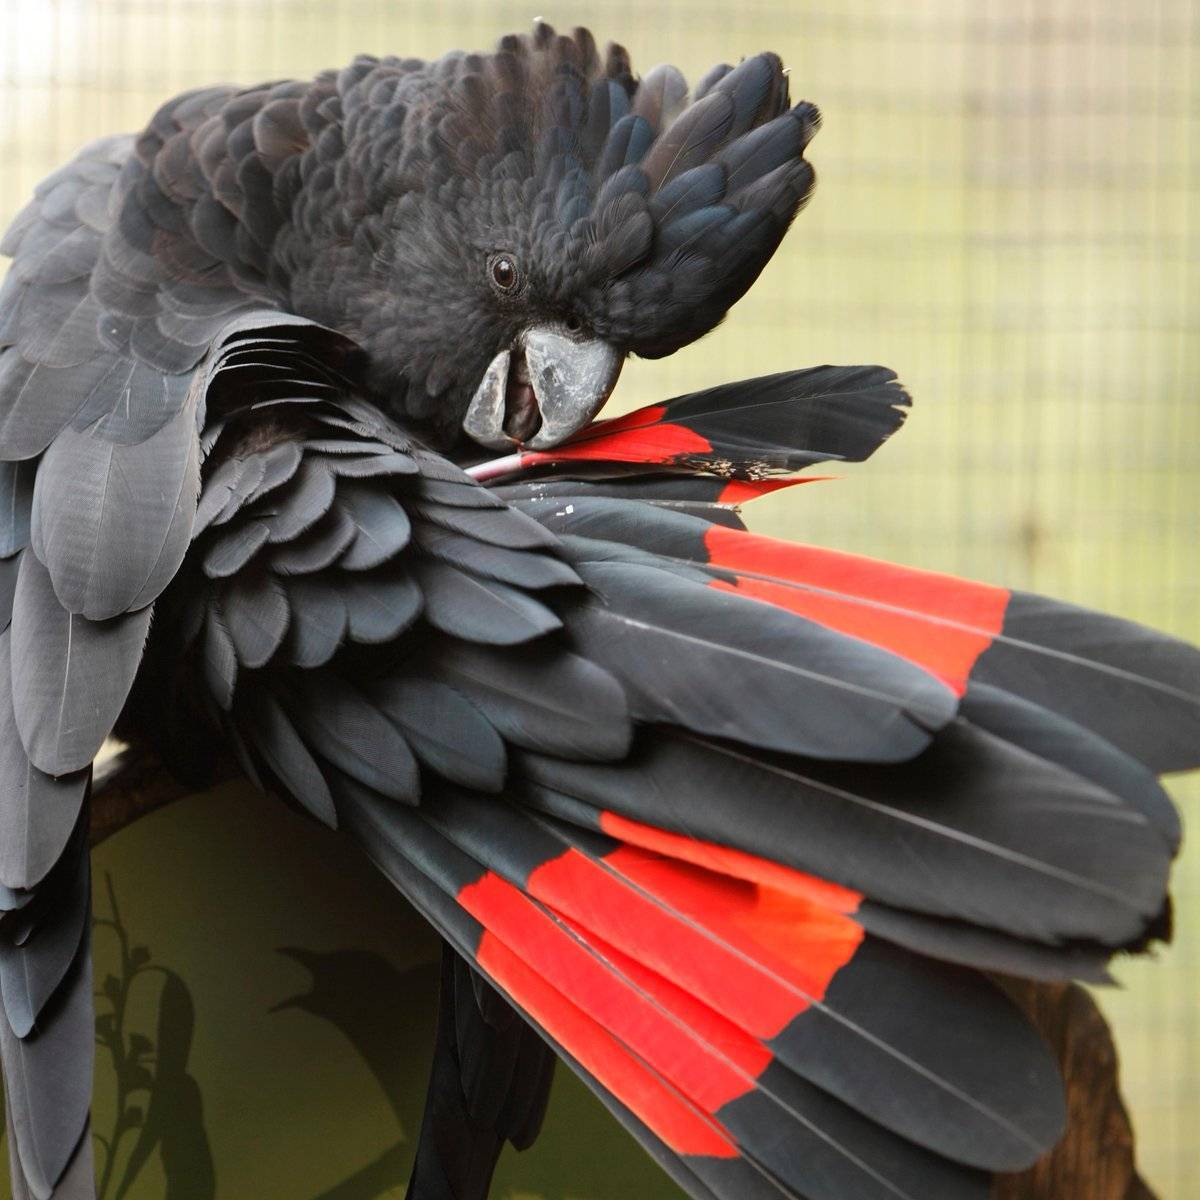 Попугай какаду: где обитает, виды, фото, содержание дома